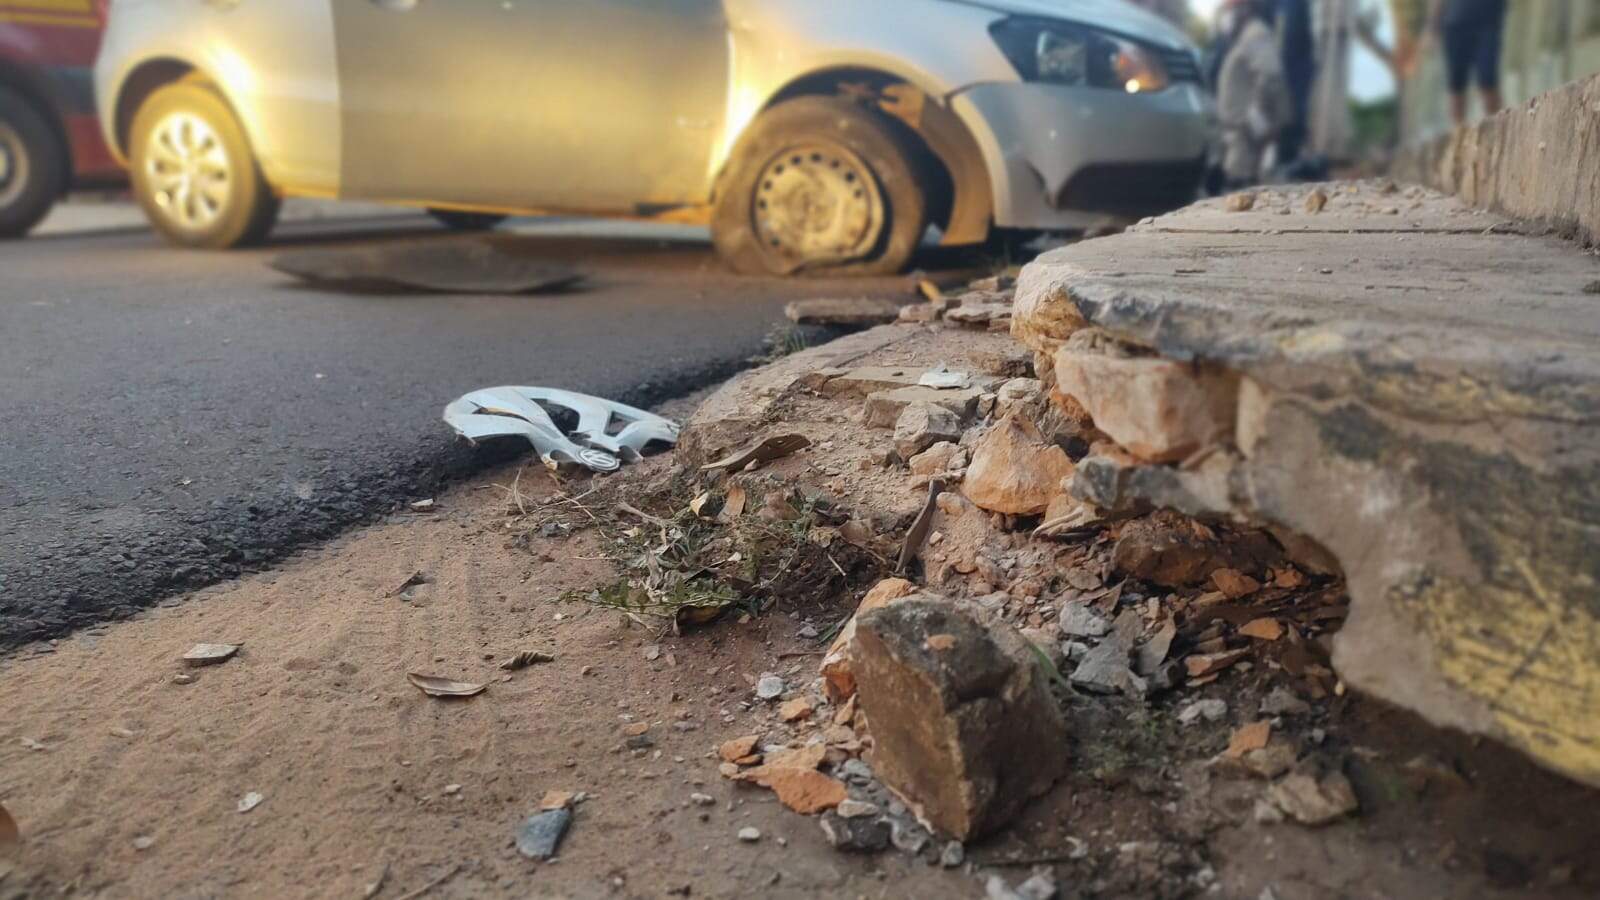 whatsapp image 2022 02 26 at 10.51.15 1 - Motorista perde controle e capota carro em bairro de Campo Grande